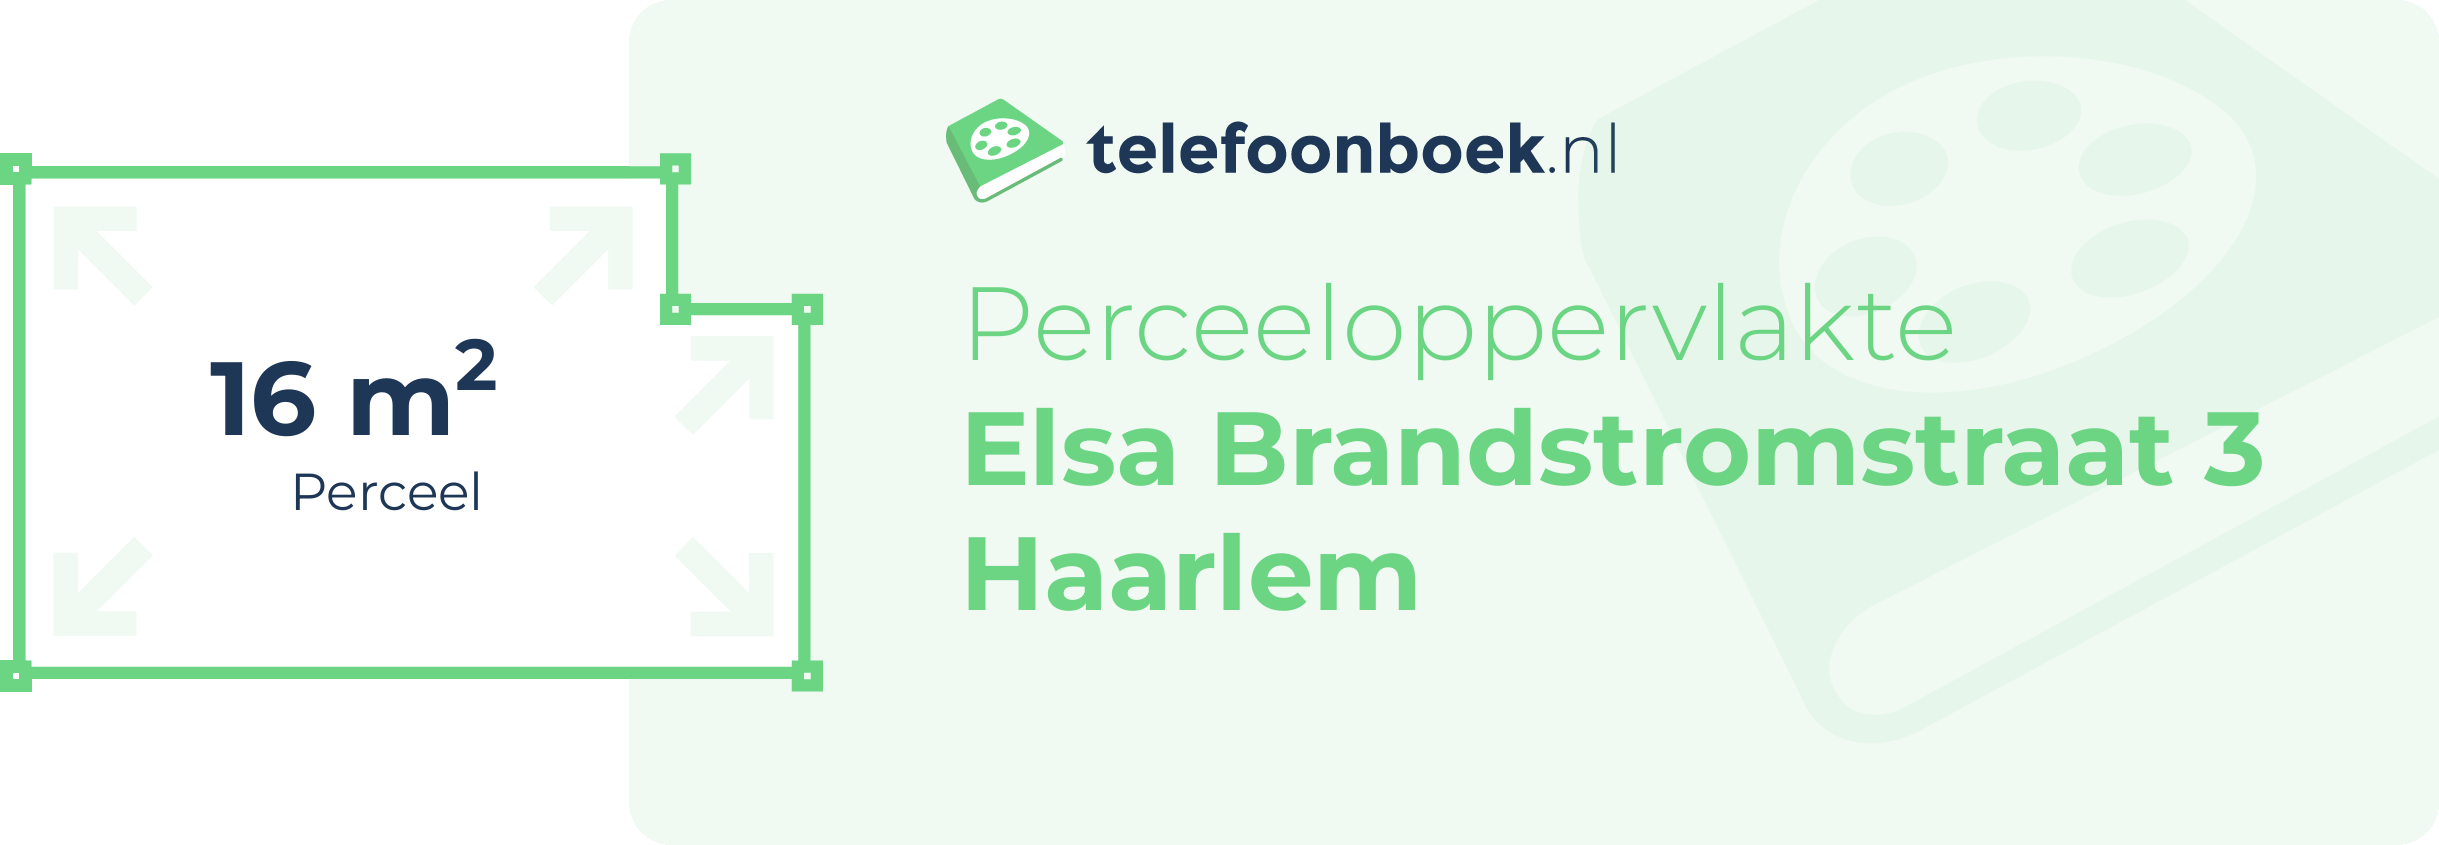 Perceeloppervlakte Elsa Brandstromstraat 3 Haarlem